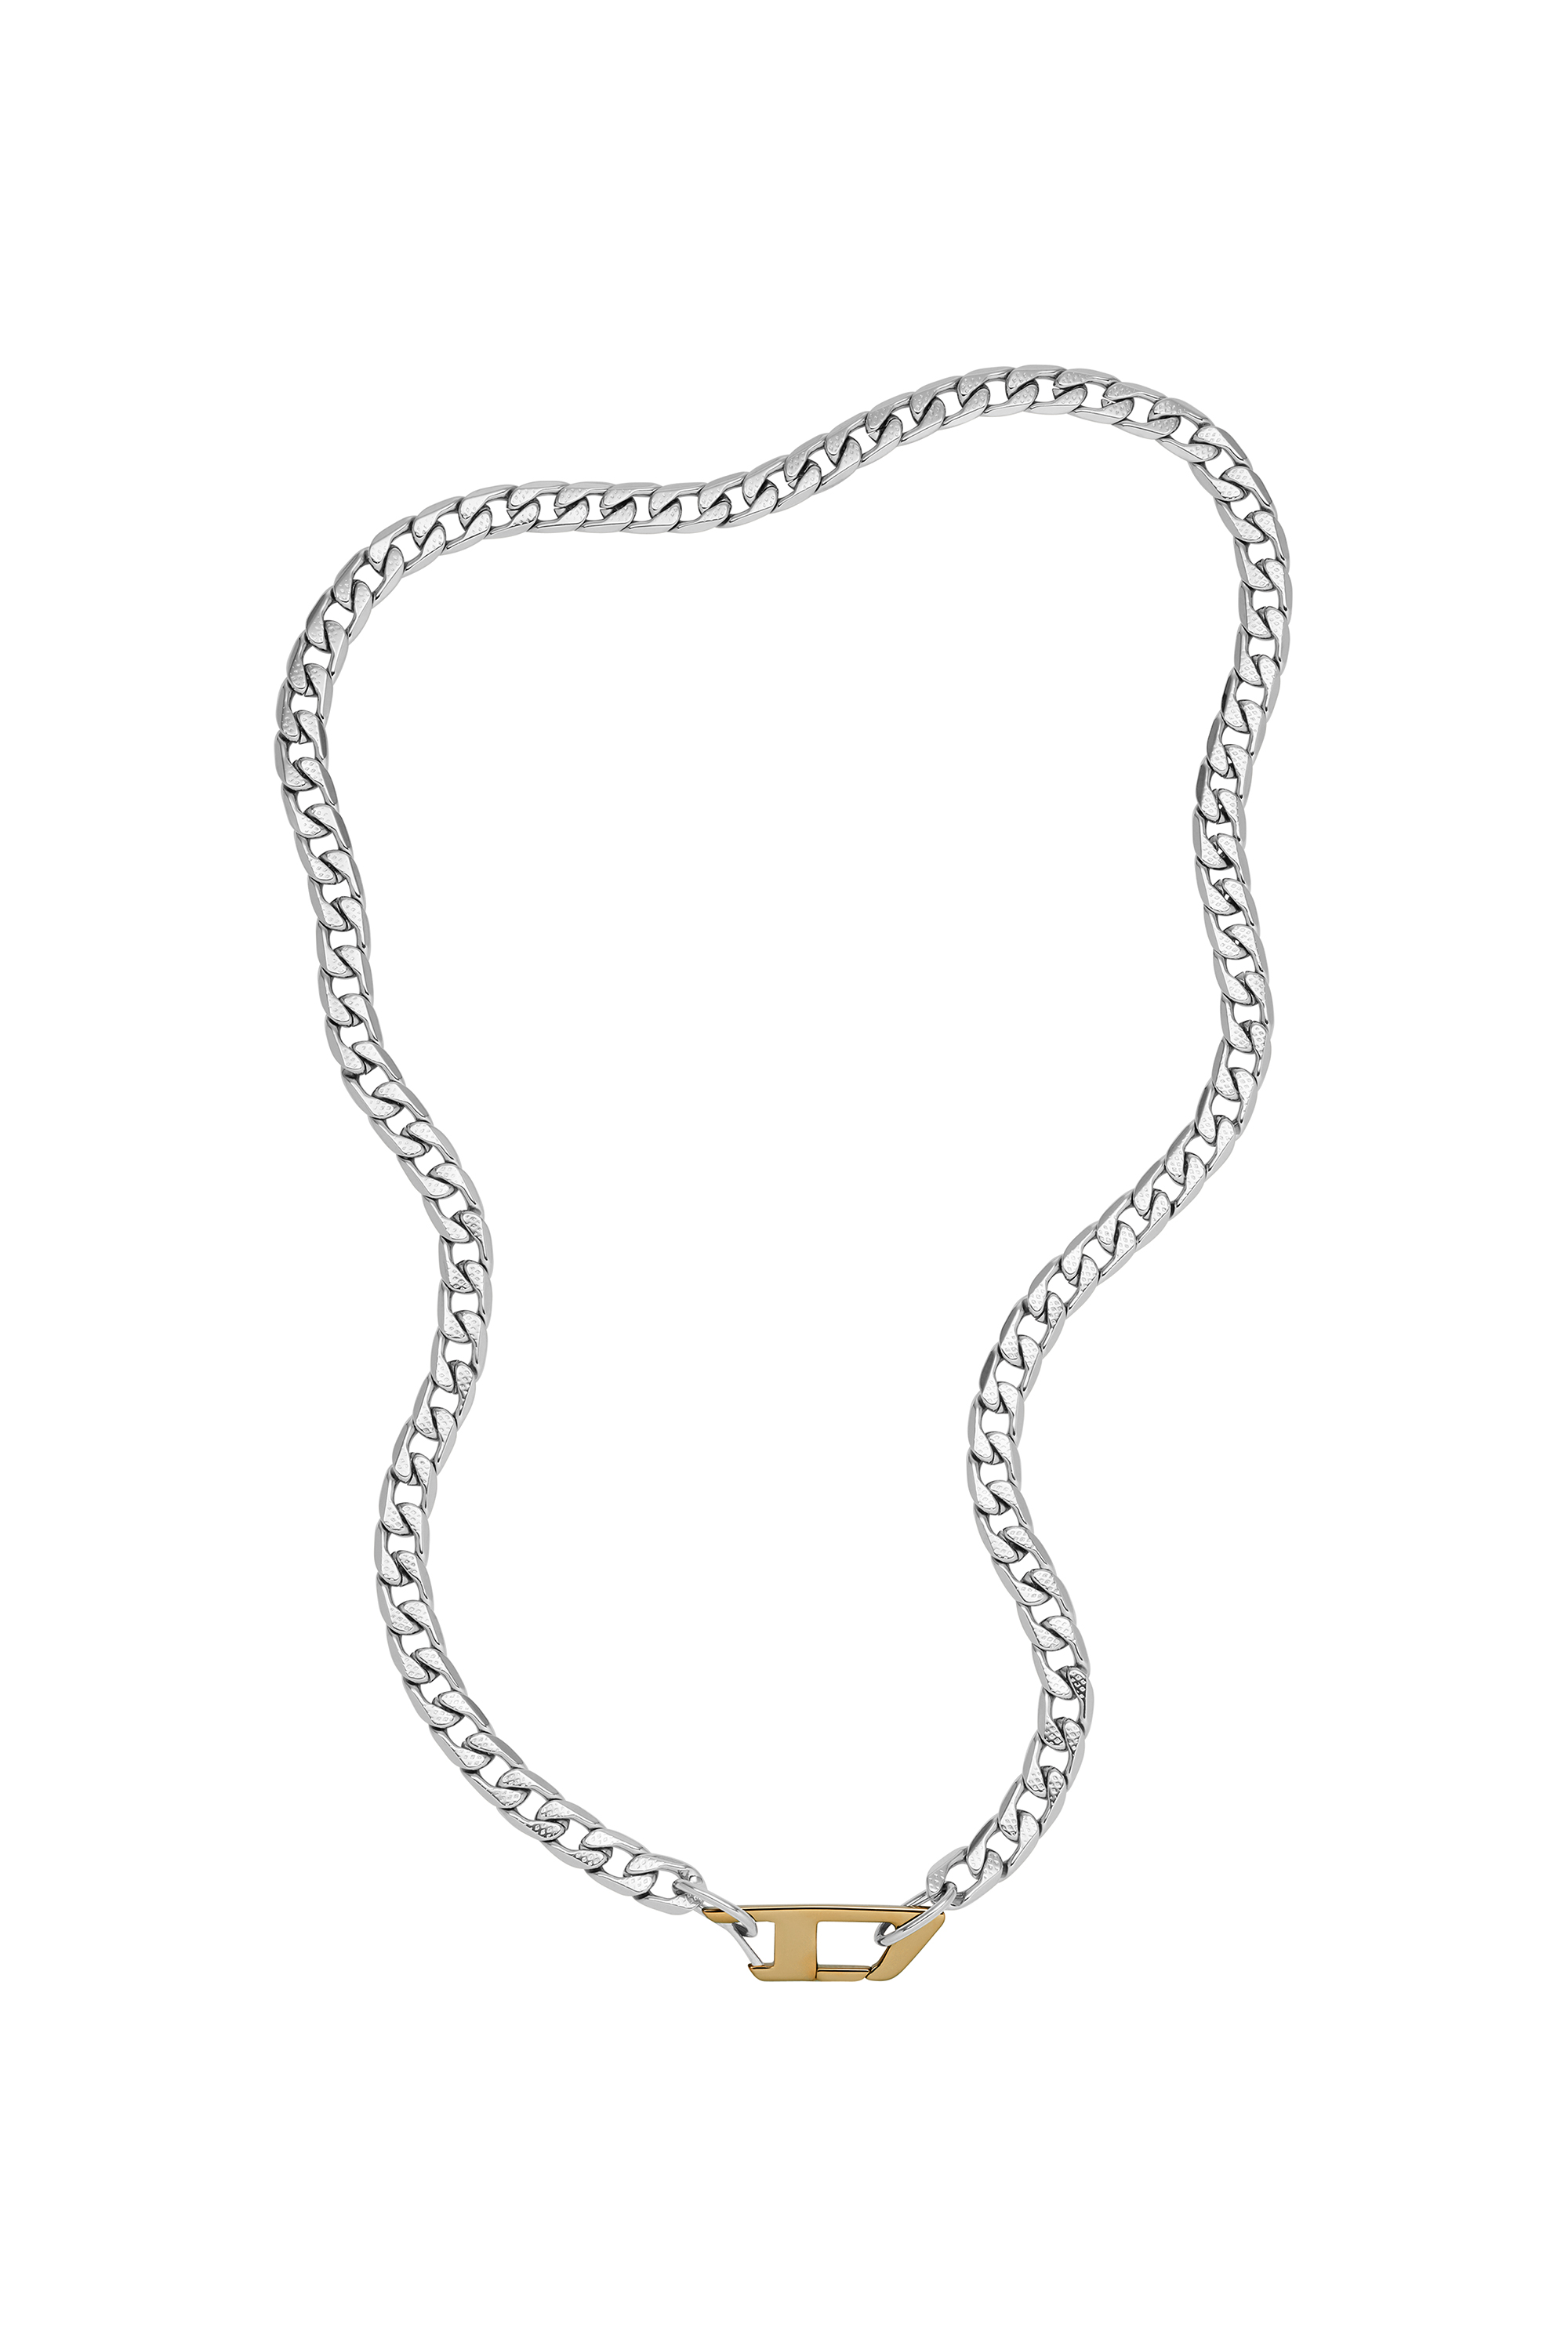 Halsketten für Männer: Kette Edelstahl, Diesel® 